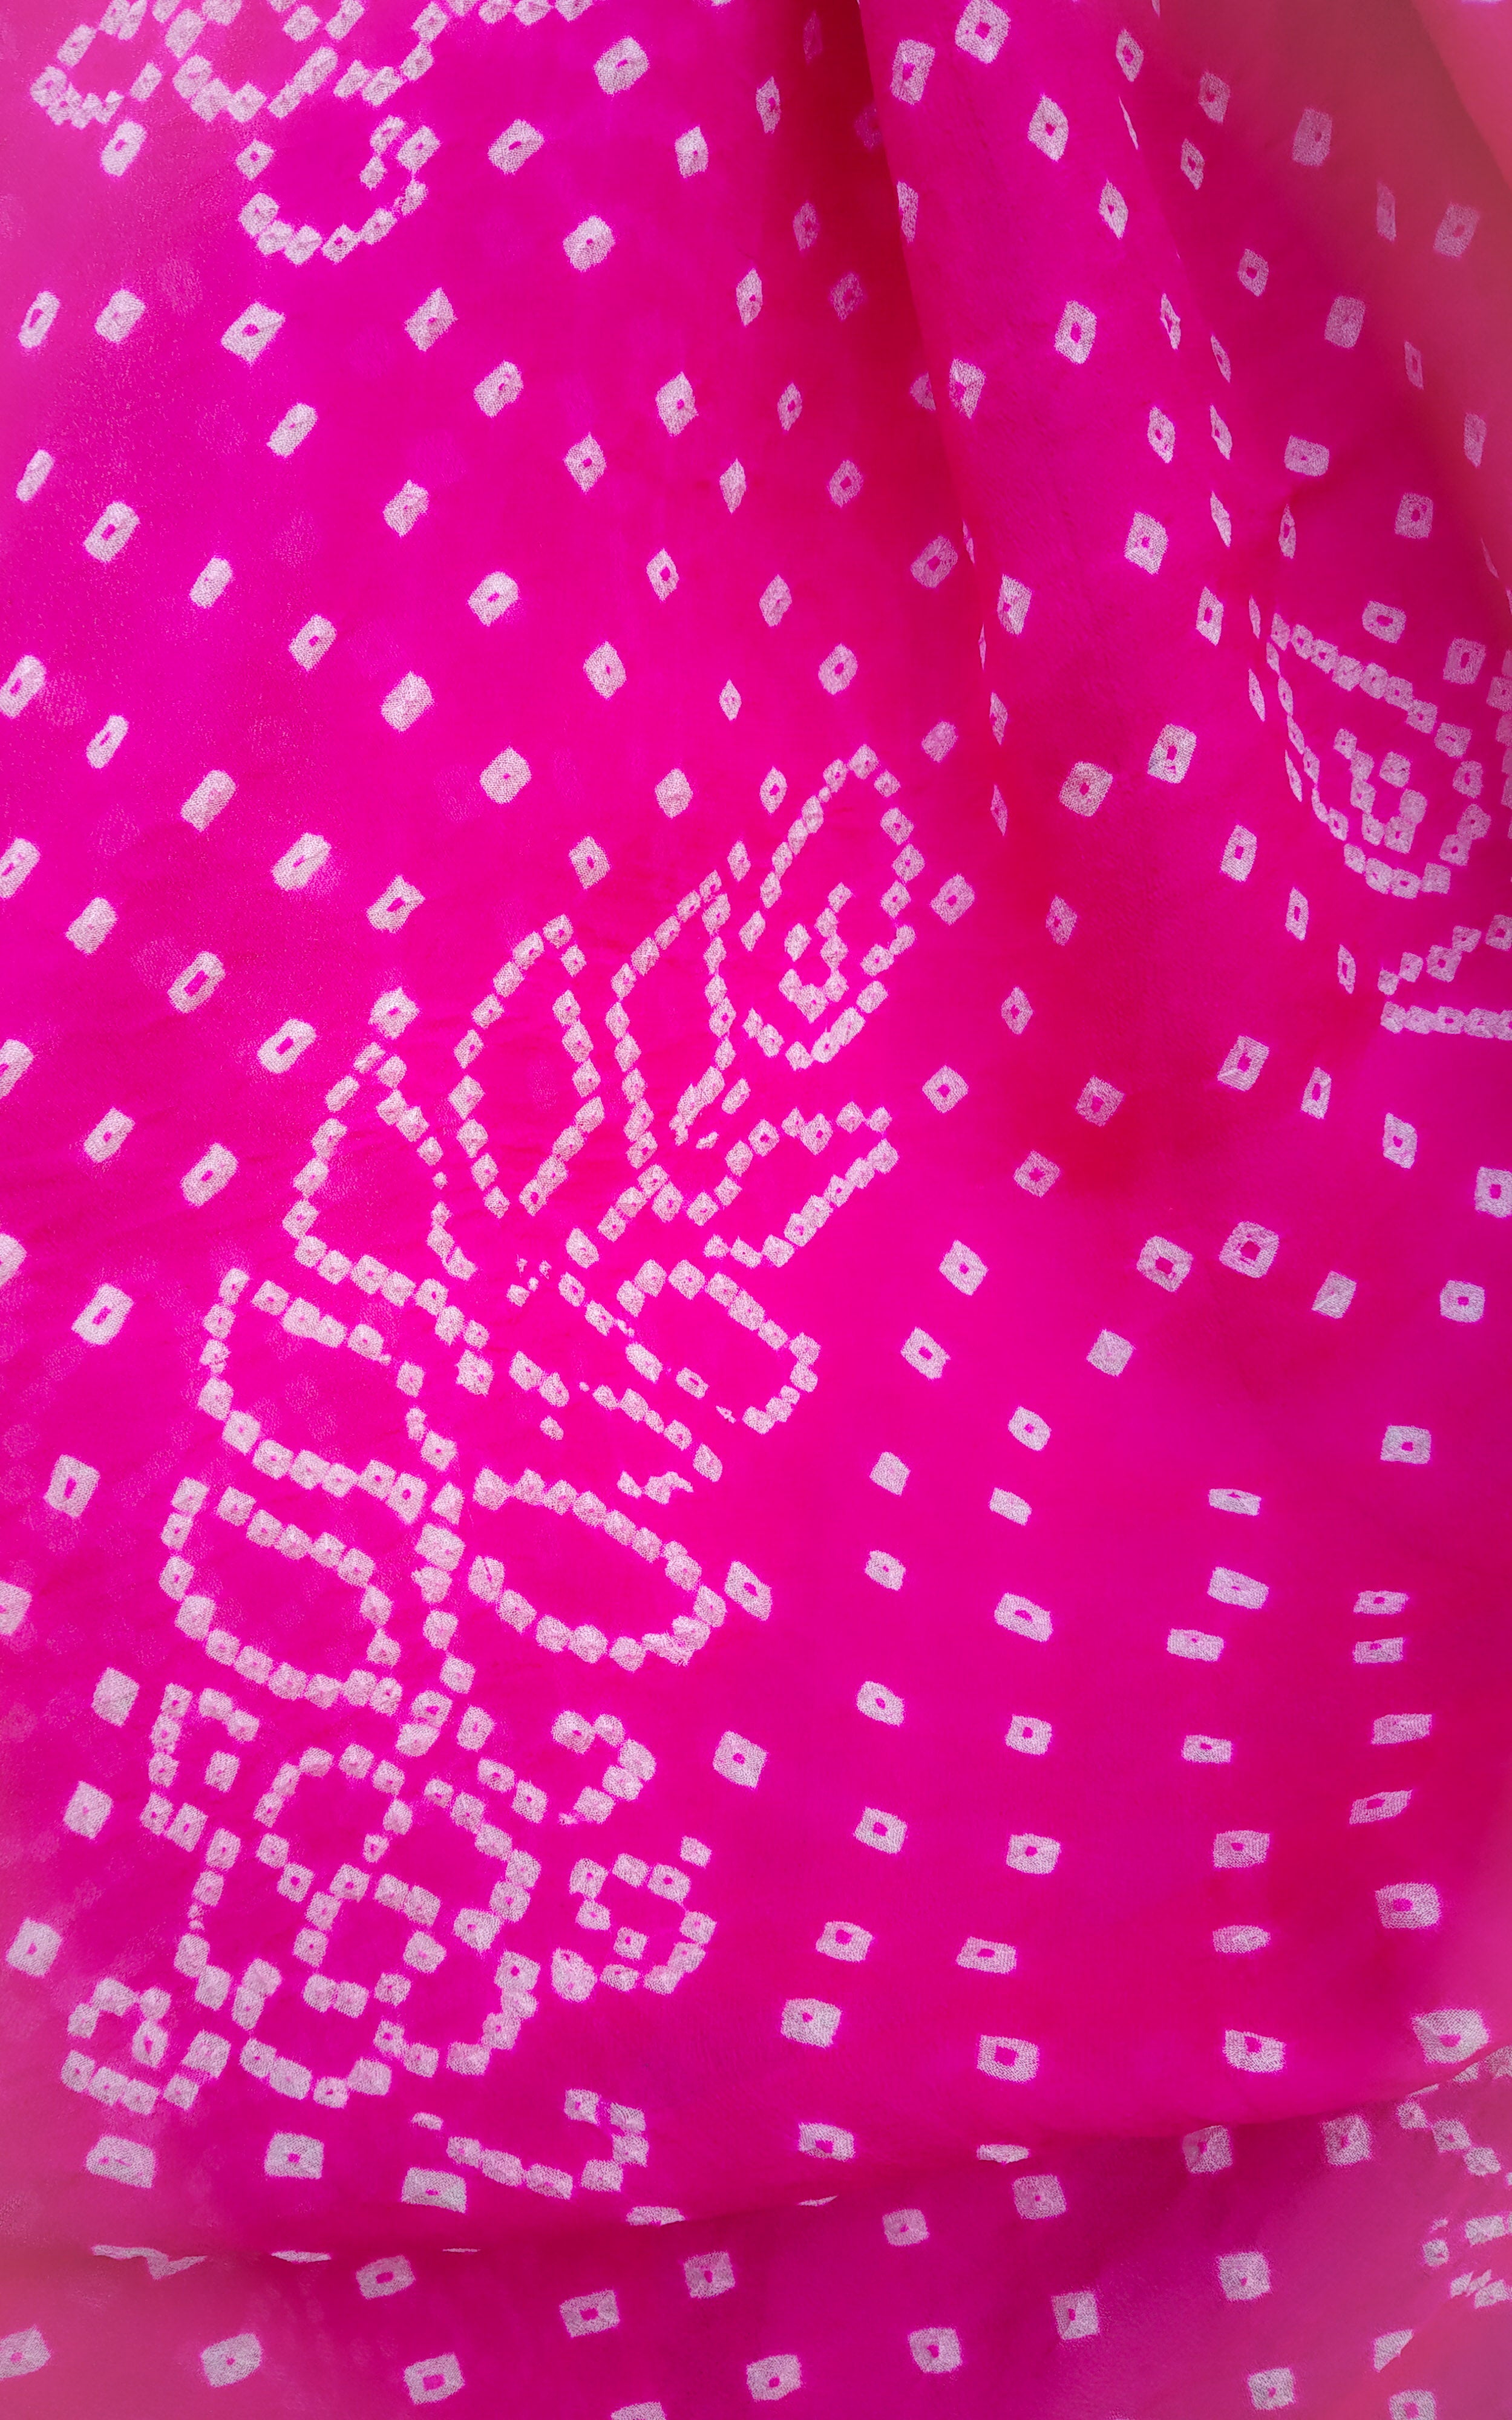 Buy Rani Pink Bandhej Dupatta Online at LabelKanupriya.